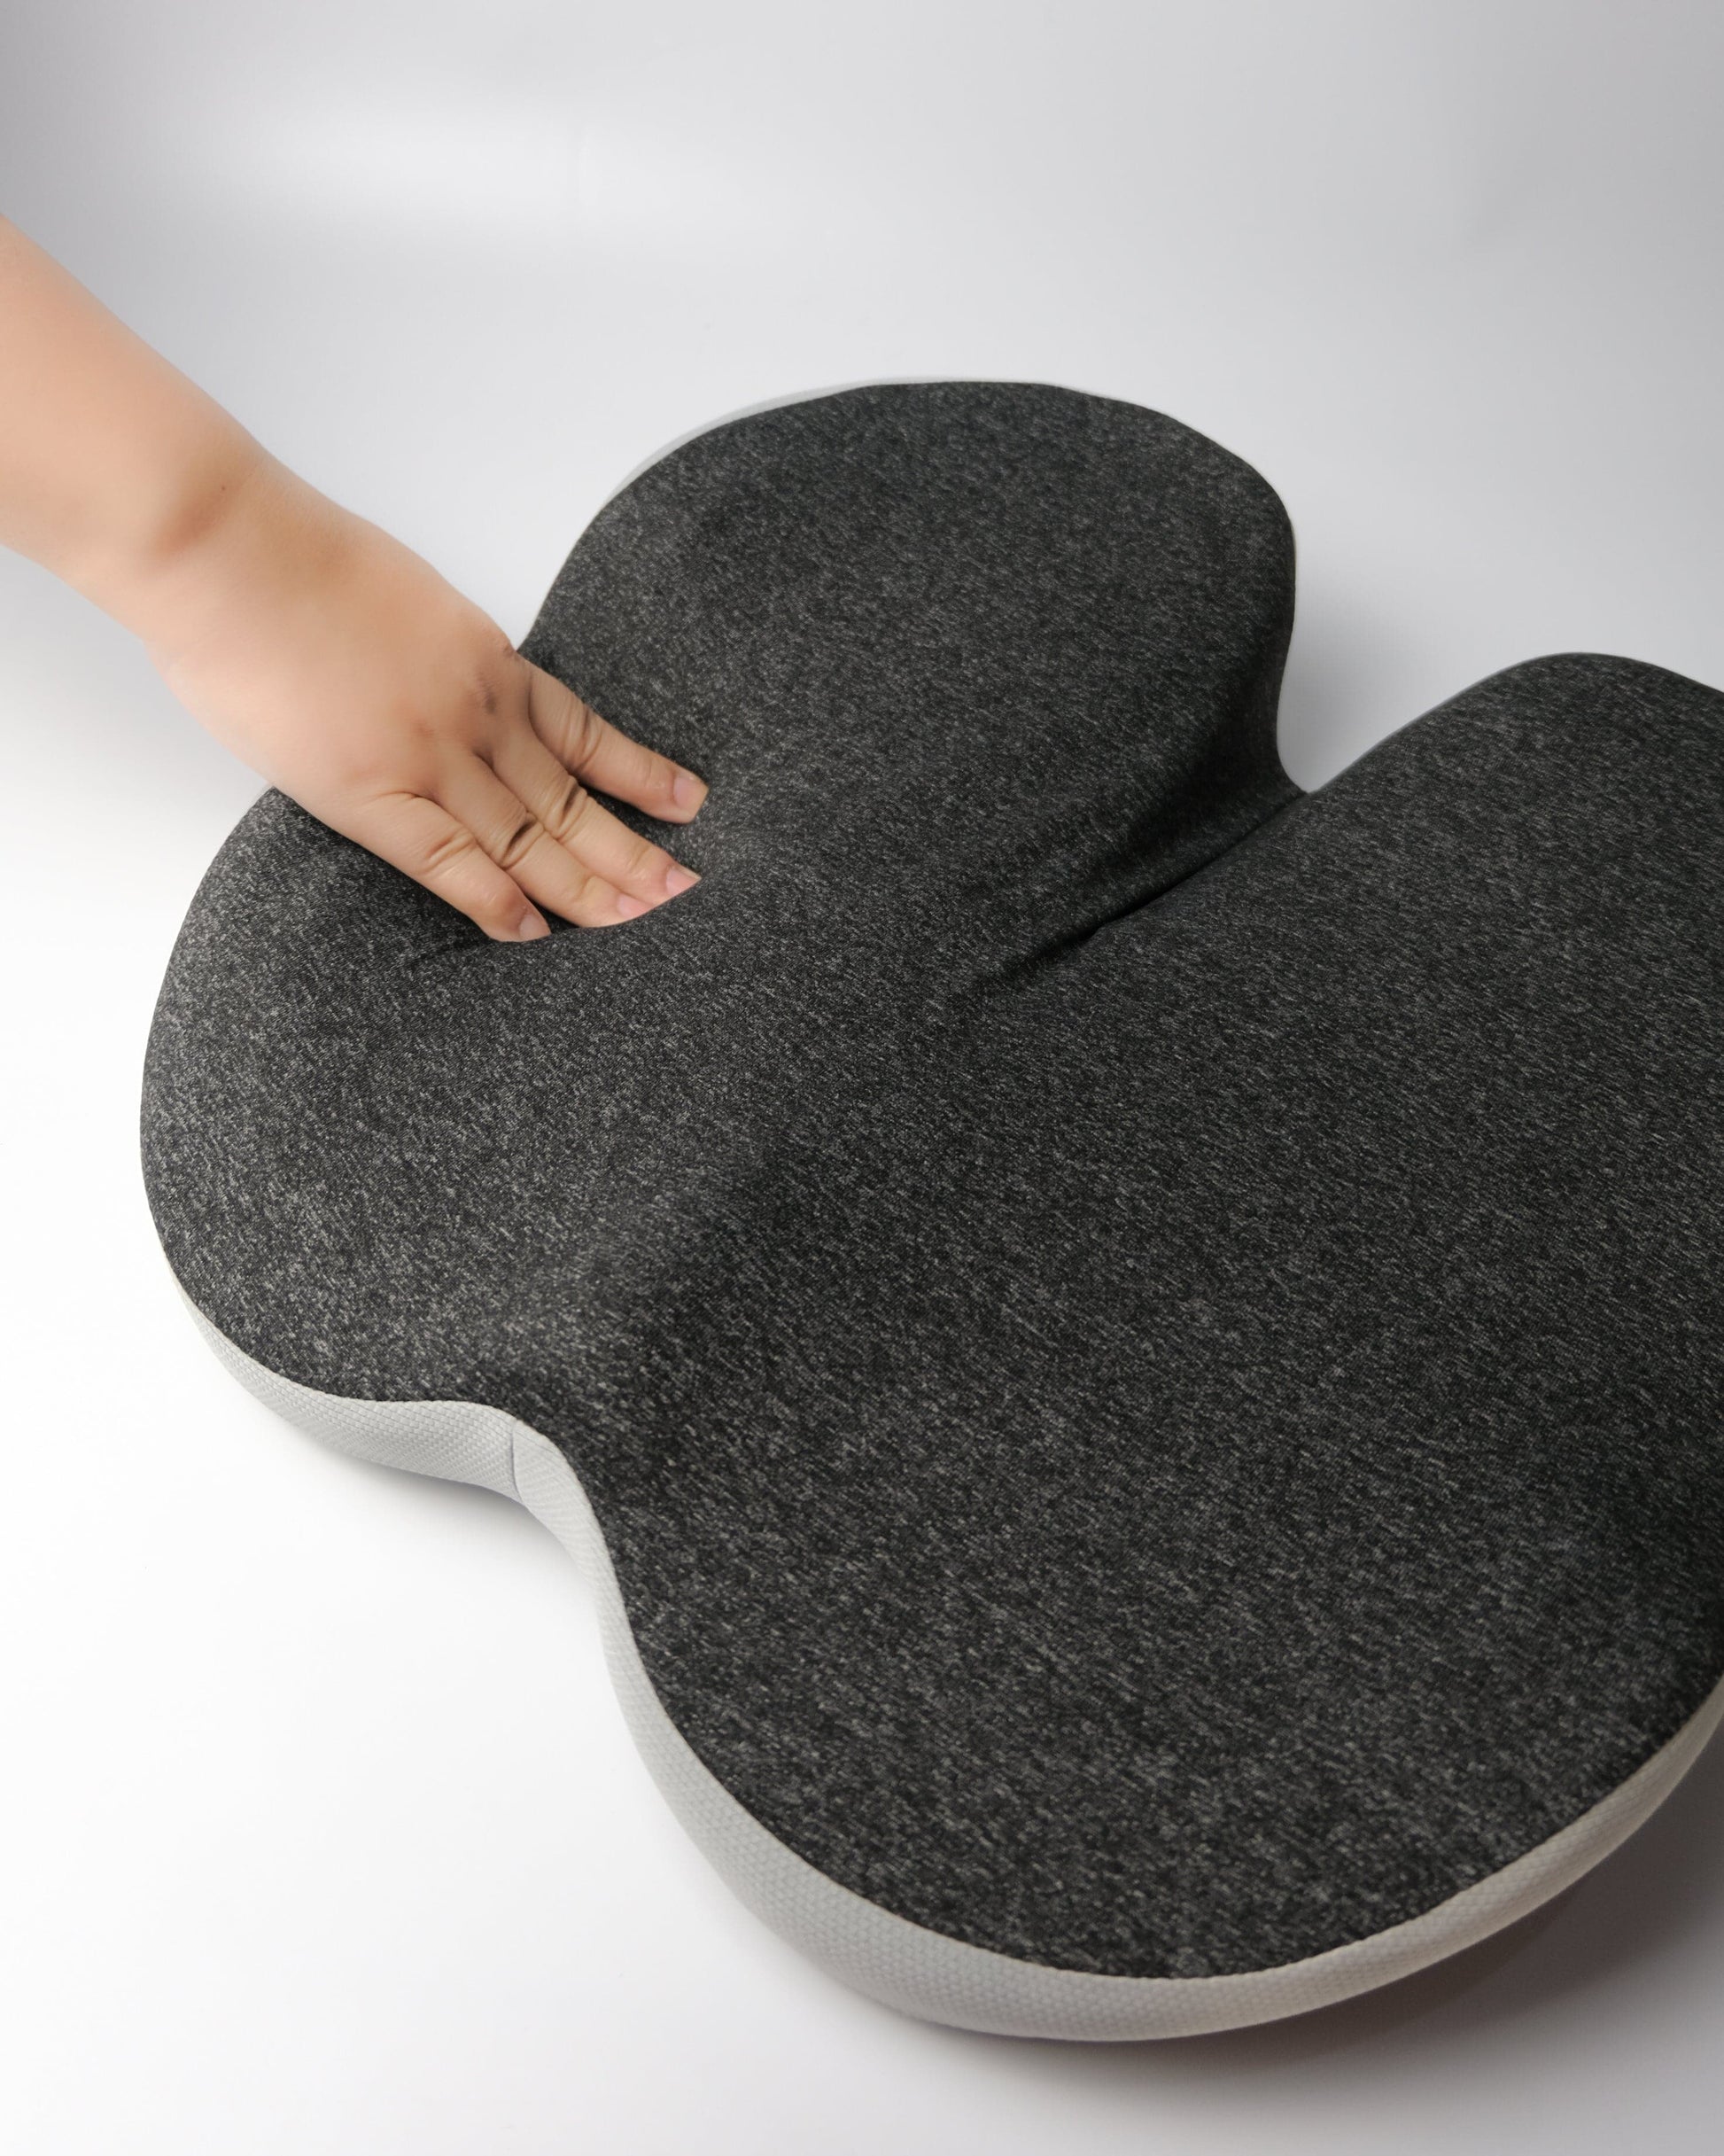 Pressure Relief Ergonomic Seat Cushion